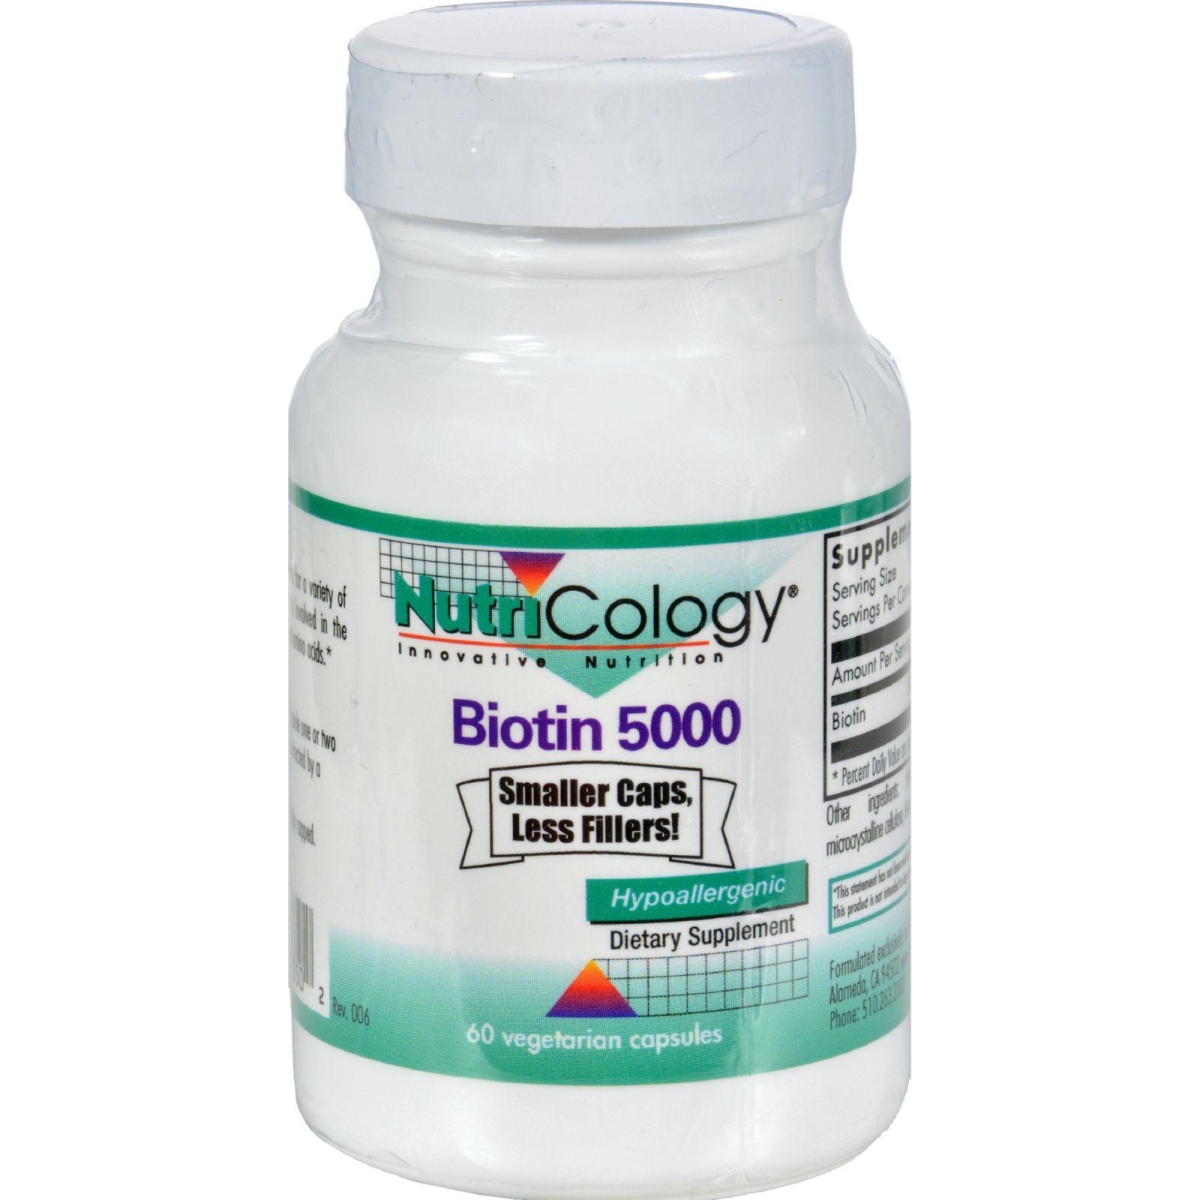 Hg0648931 Biotin 5000 - 60 Capsules